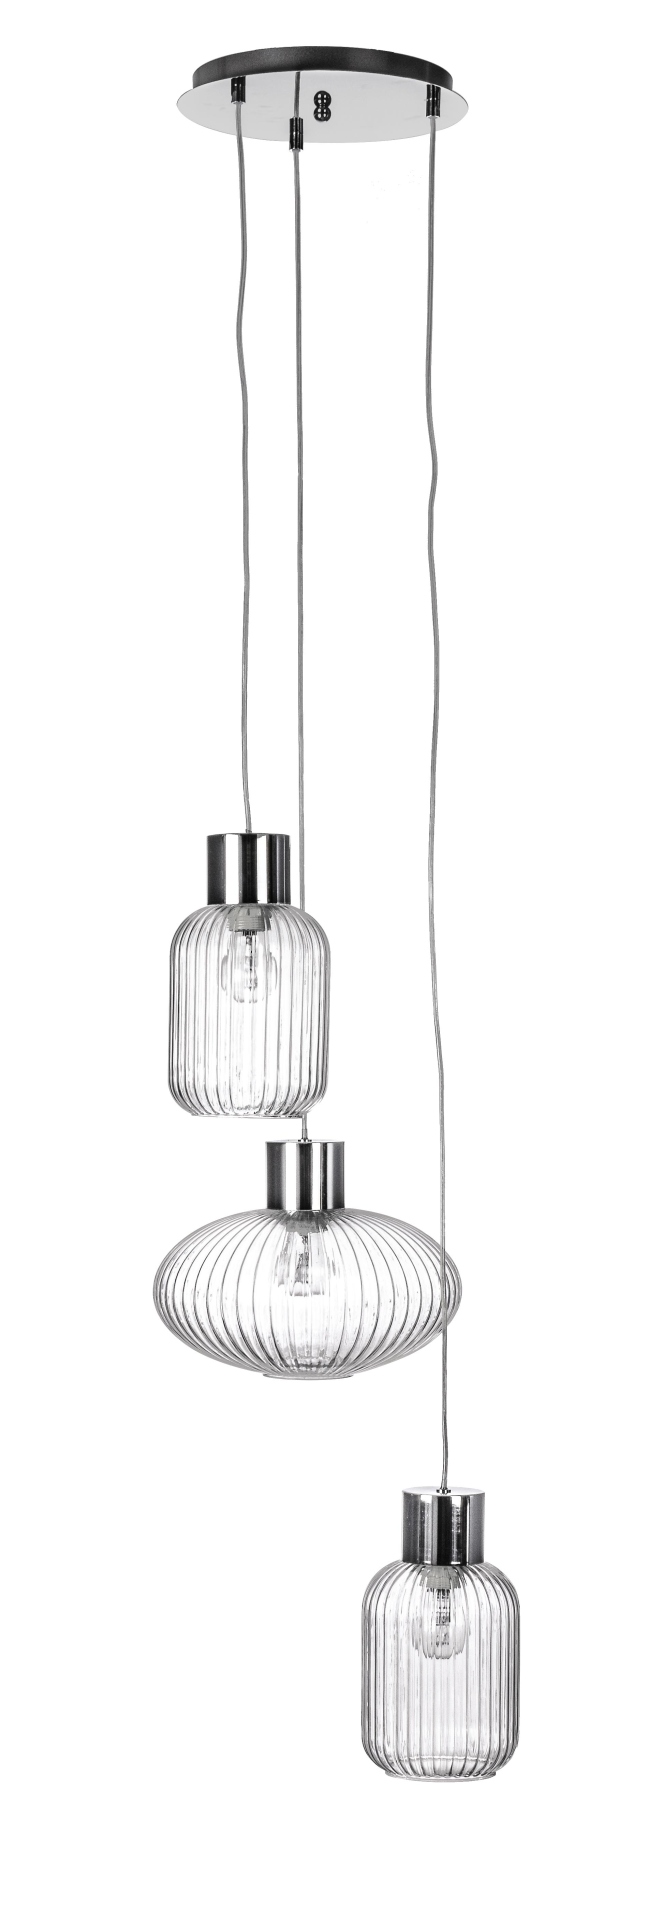 Die Hängeleuchte Showy überzeugt mit ihrem modernen Design. Gefertigt wurde sie aus Metall, welches einen silberne Farbton besitzt. Die Lampenschirme sind aus Glas und sind klar. Die Lampe besitzt eine Höhe von 150 cm.